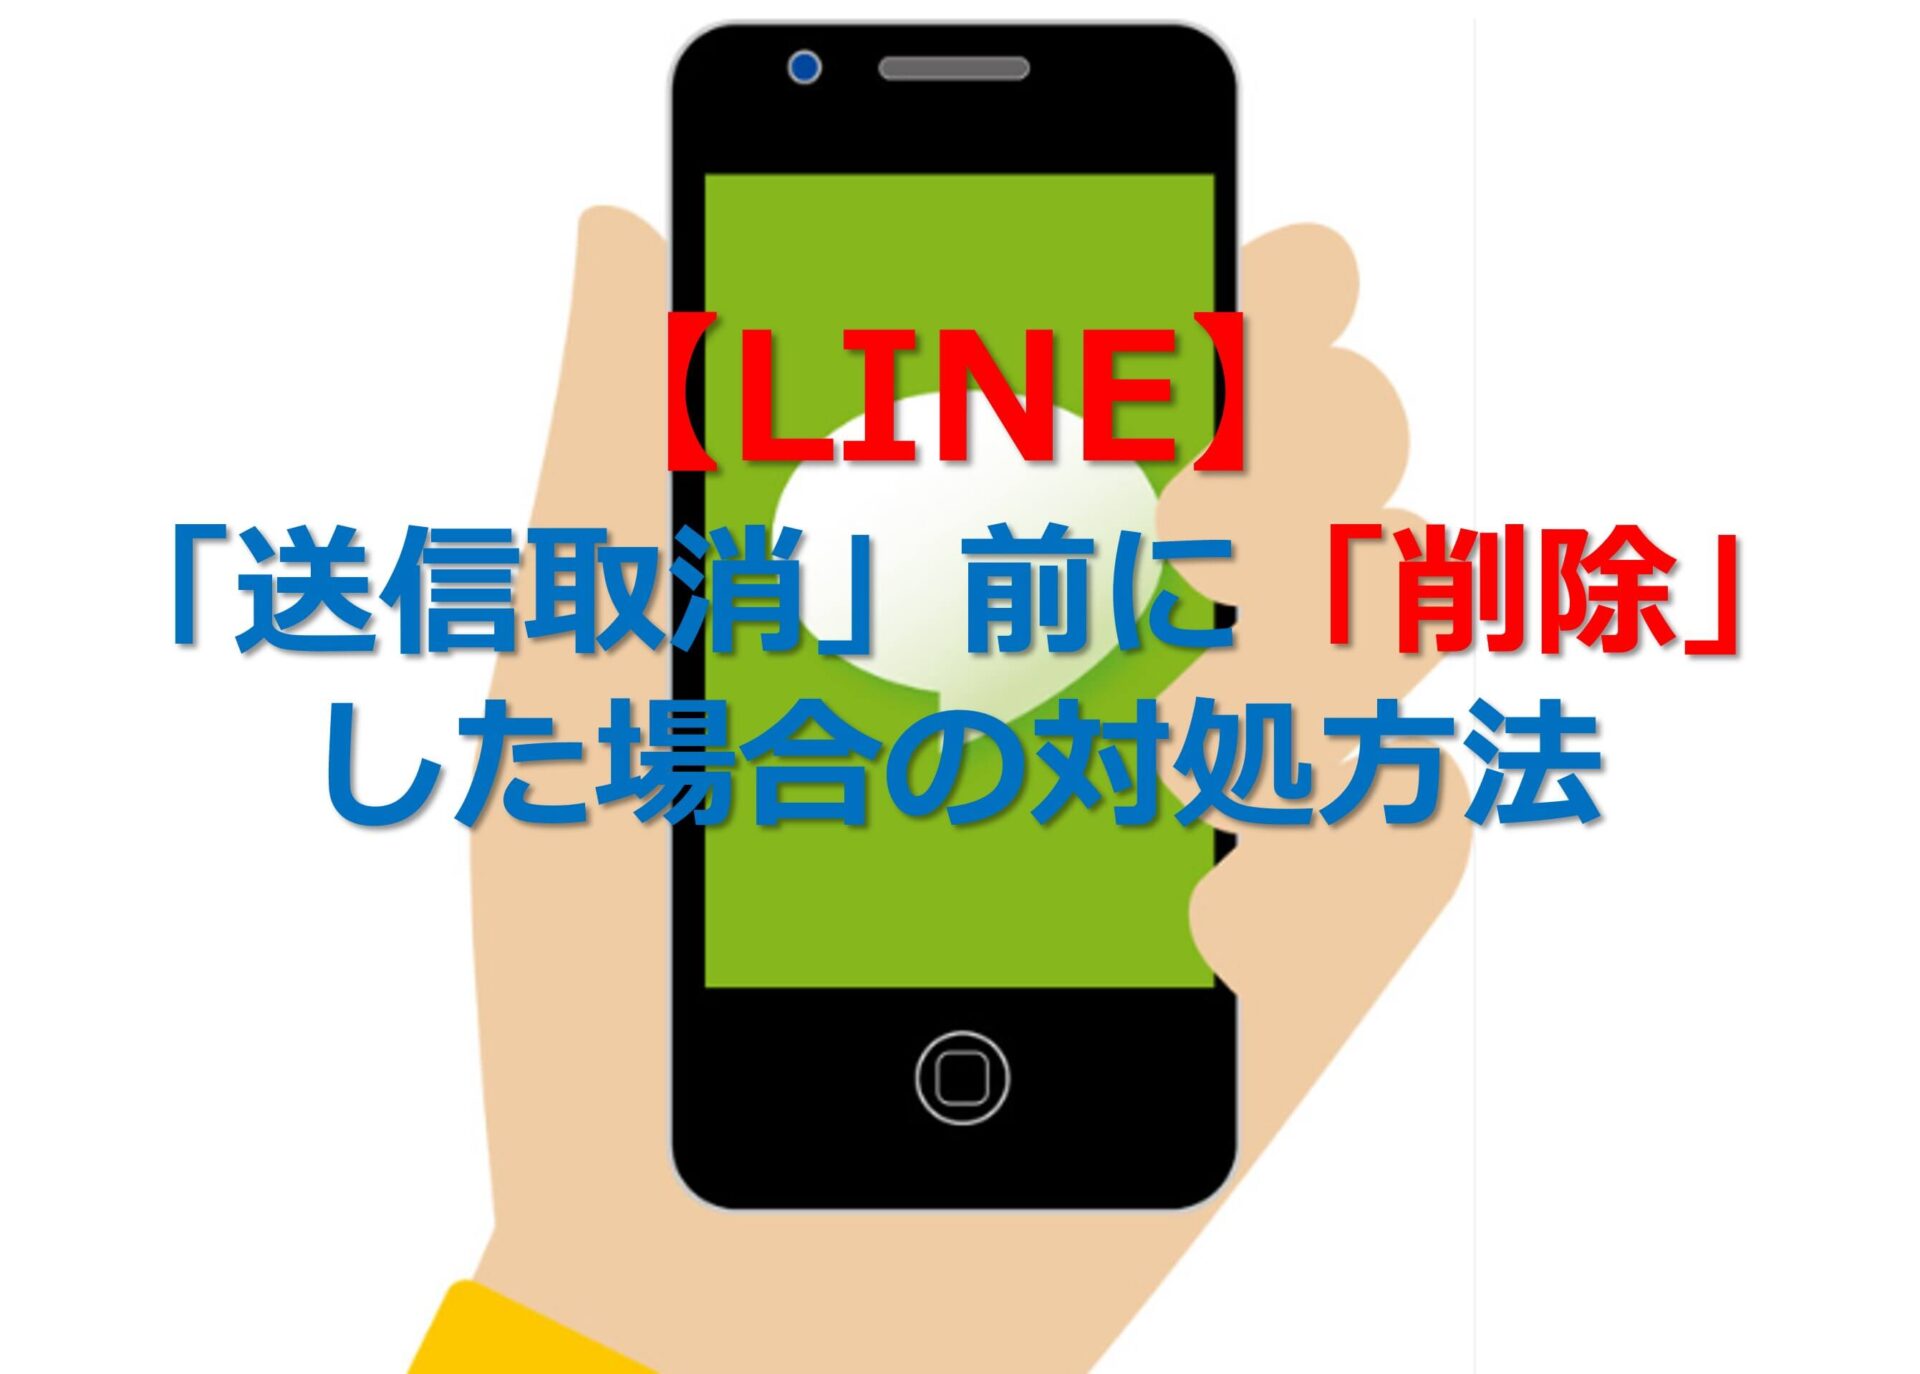 【LINE】「送信取消」前に「削除」した場合の対処方法